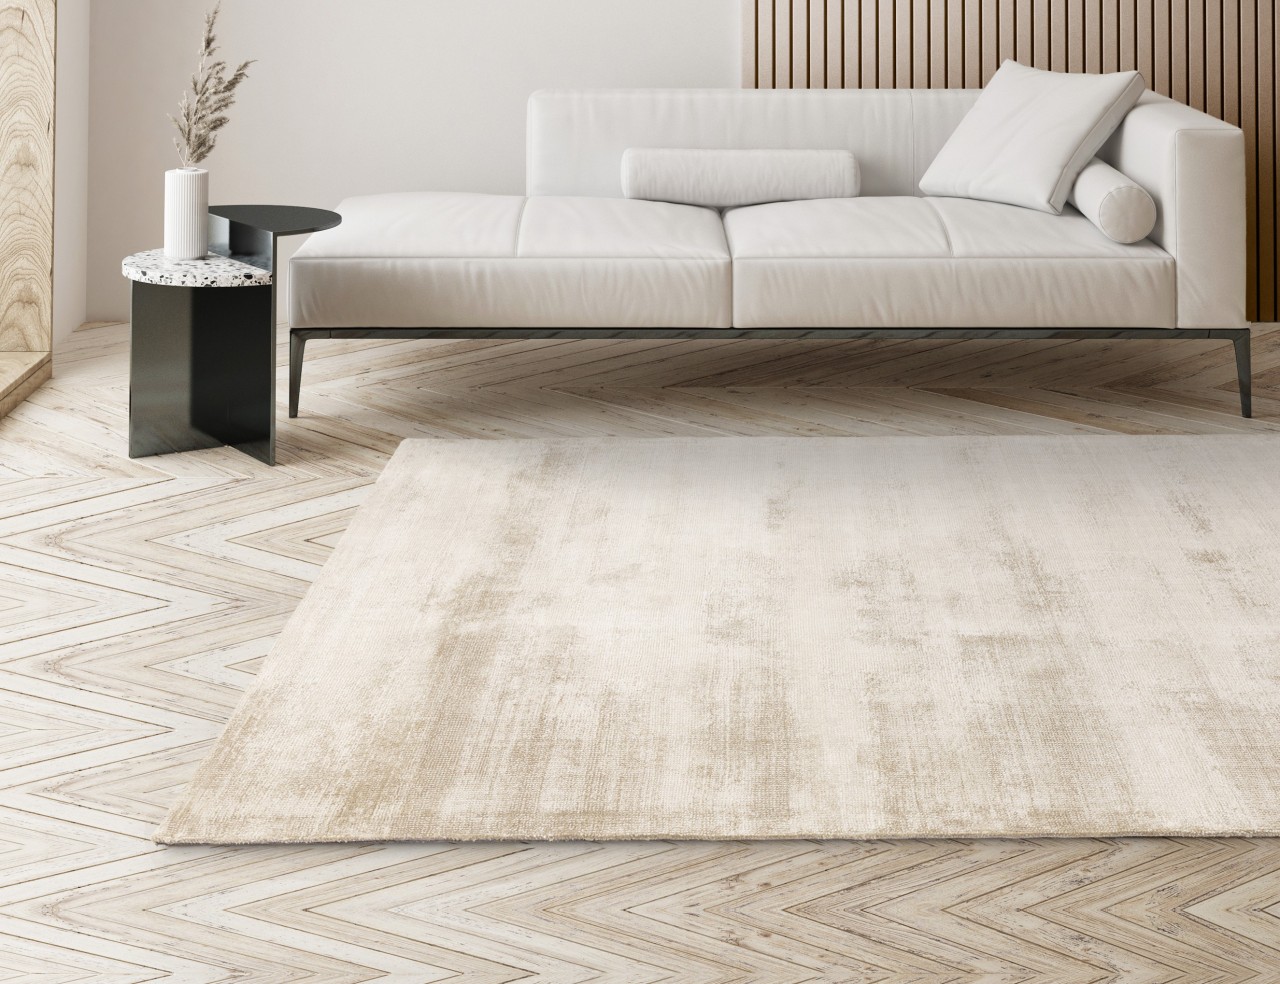 Um tapete estiloso e moderno! O tapete Aston é a escolha perfeita para criar o ambiente que você deseja.